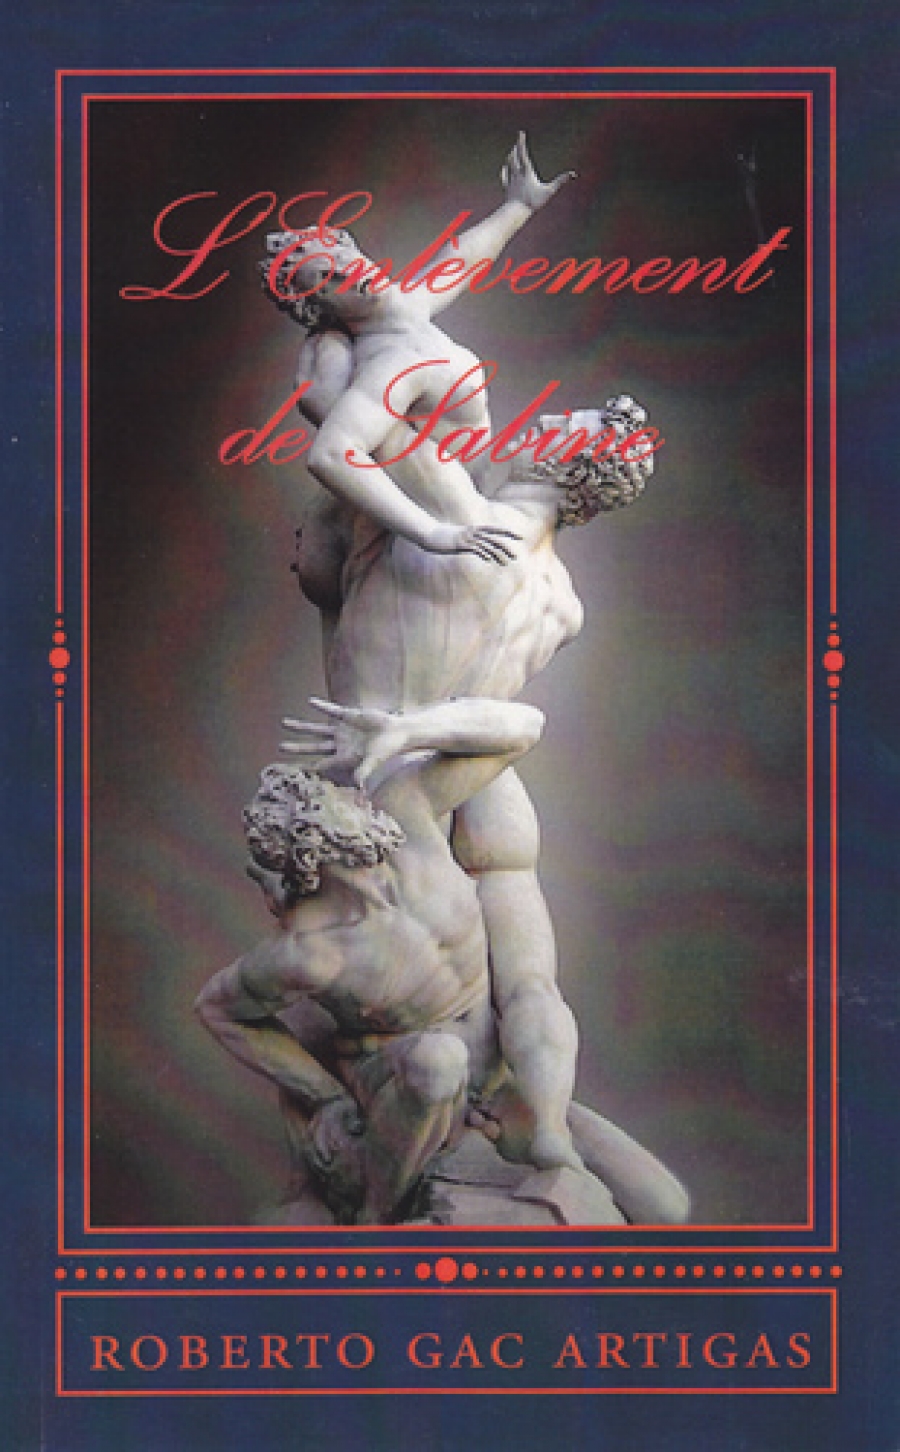 Couverture : L&#039;Enlèvement des Sabines, 1582, Giambologna, Loggia della Signoria, Florence.